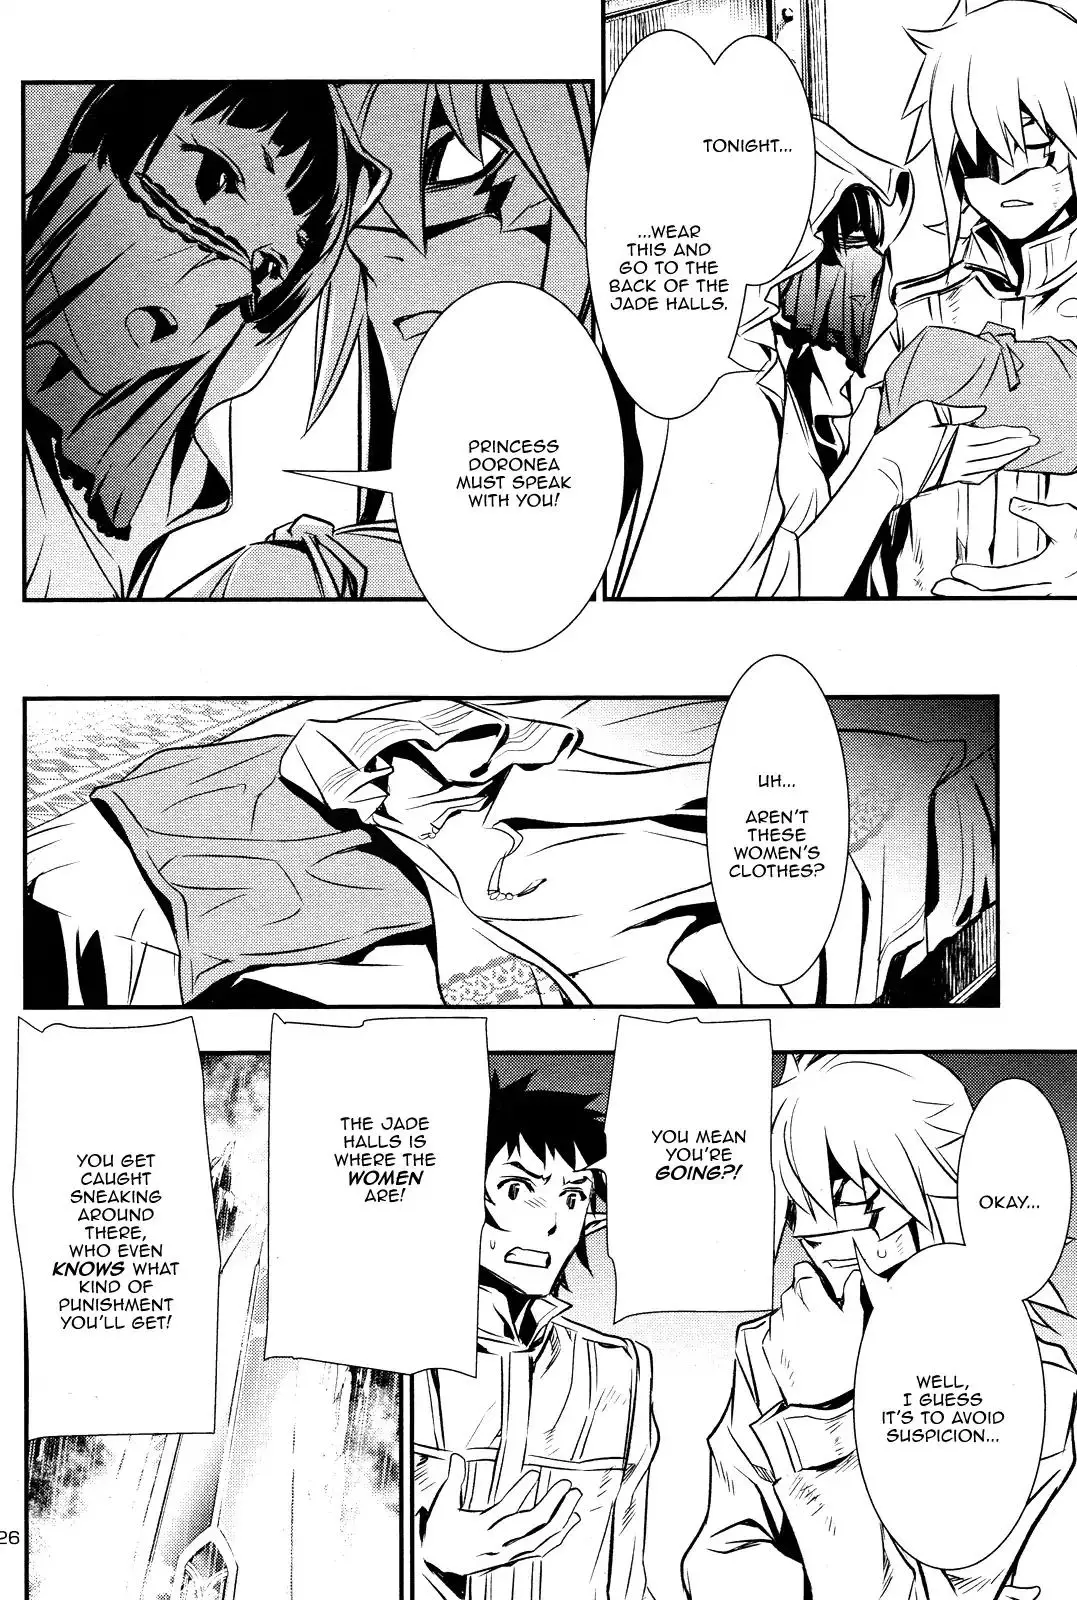 Shinju no Nectar - 10 page 24